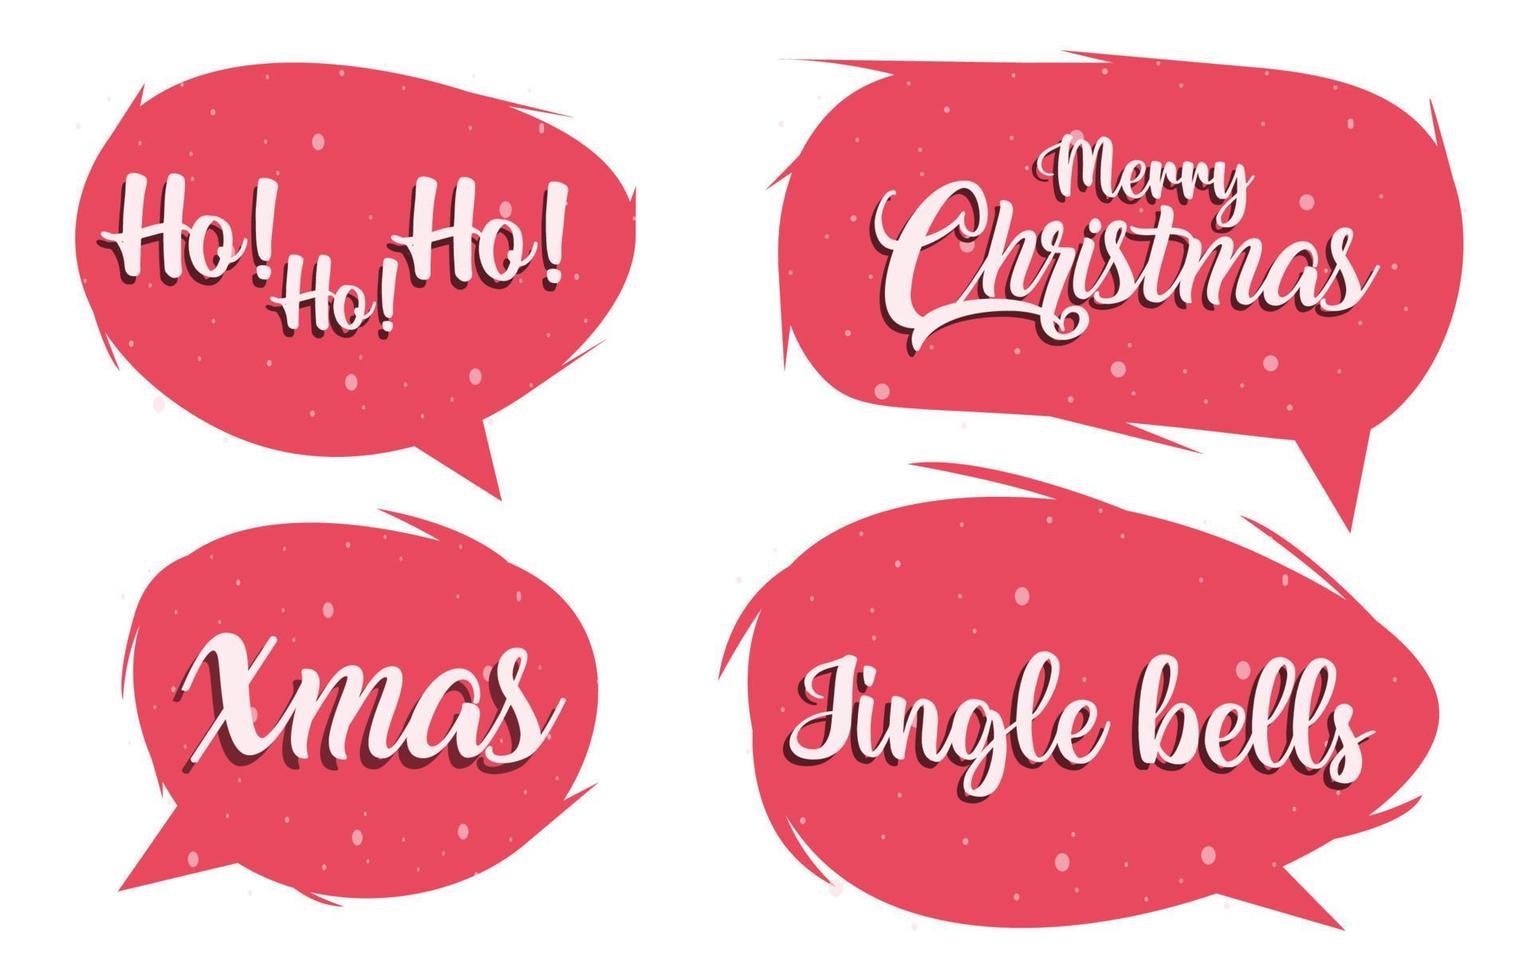 Stellen Sie weihnachtliche Sprechblasen auf weißem Hintergrund ein. mit den worten frohe weihnachten, ho ho, jingle bell. Doodle-Chat-Vektornachricht oder Kommunikationssymbol. Wolke spricht für Comics und minimale Dialoge vektor